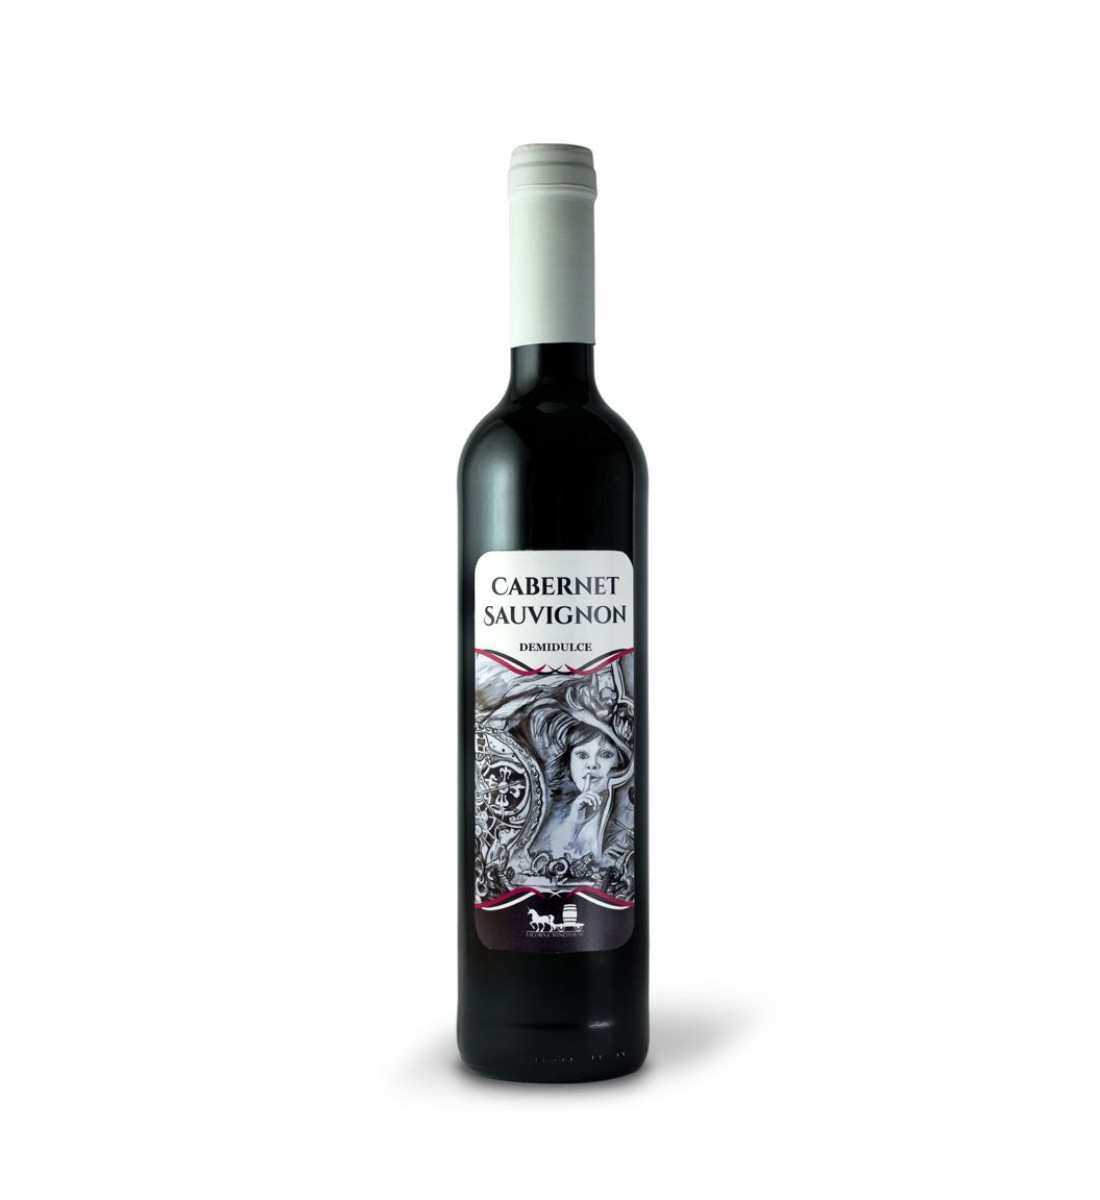 Licorna Cabernet Sauvignon – Vin Rosu Demidulce – Romania – 0.5L 0.5L